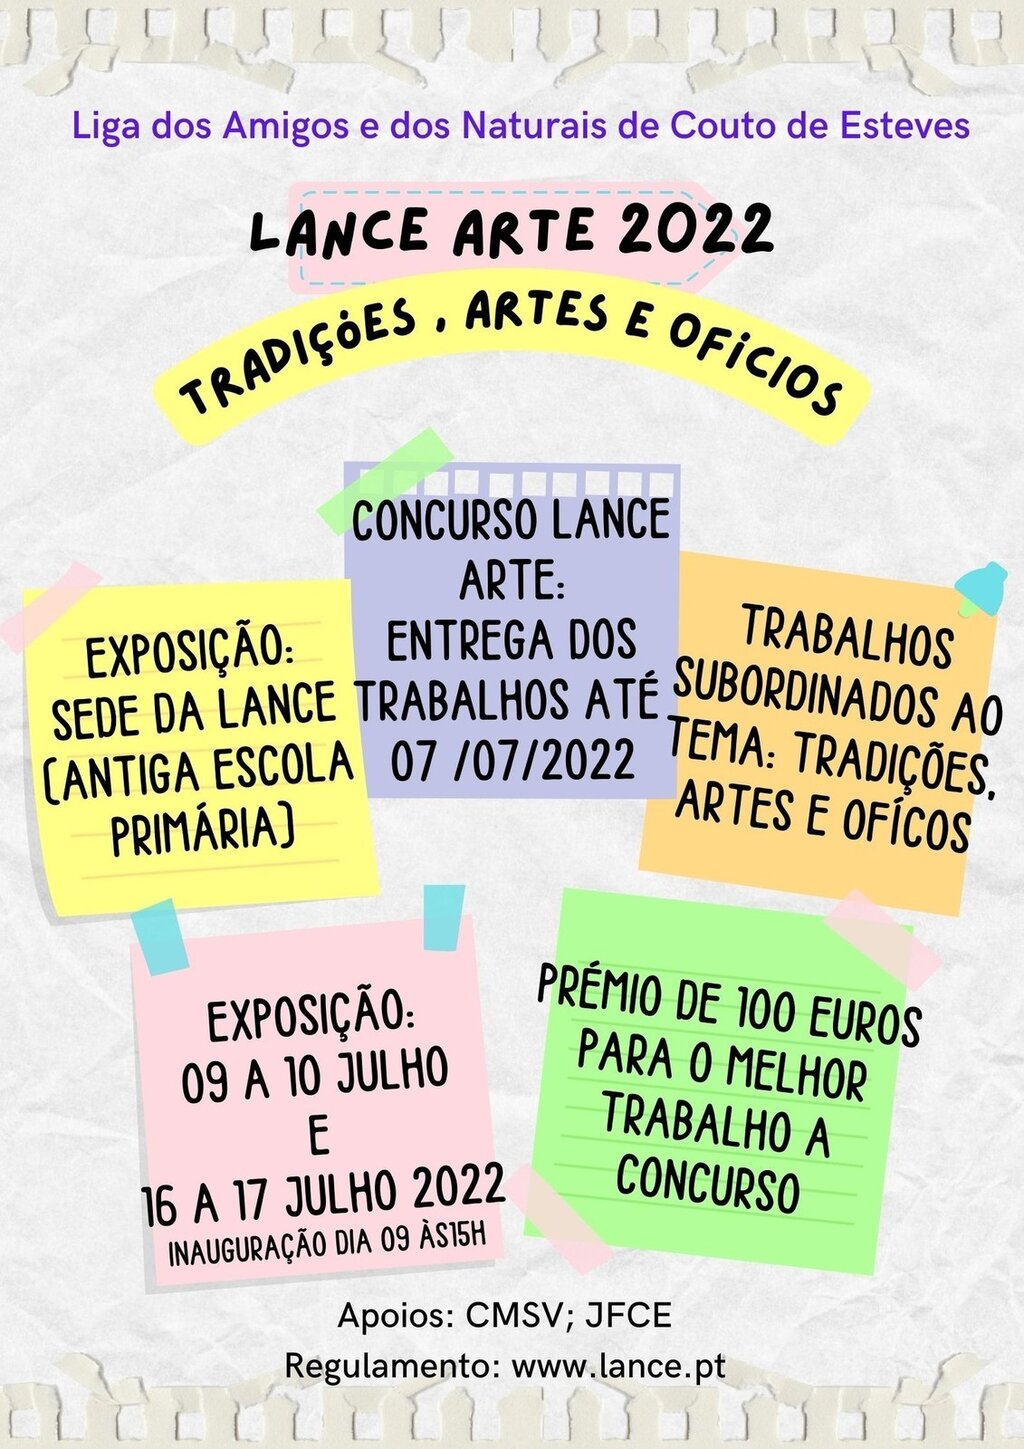 9 e 10 e 16 e 17 de Julho - Exposição LANCE ARTE 2022 - Couto de Esteves